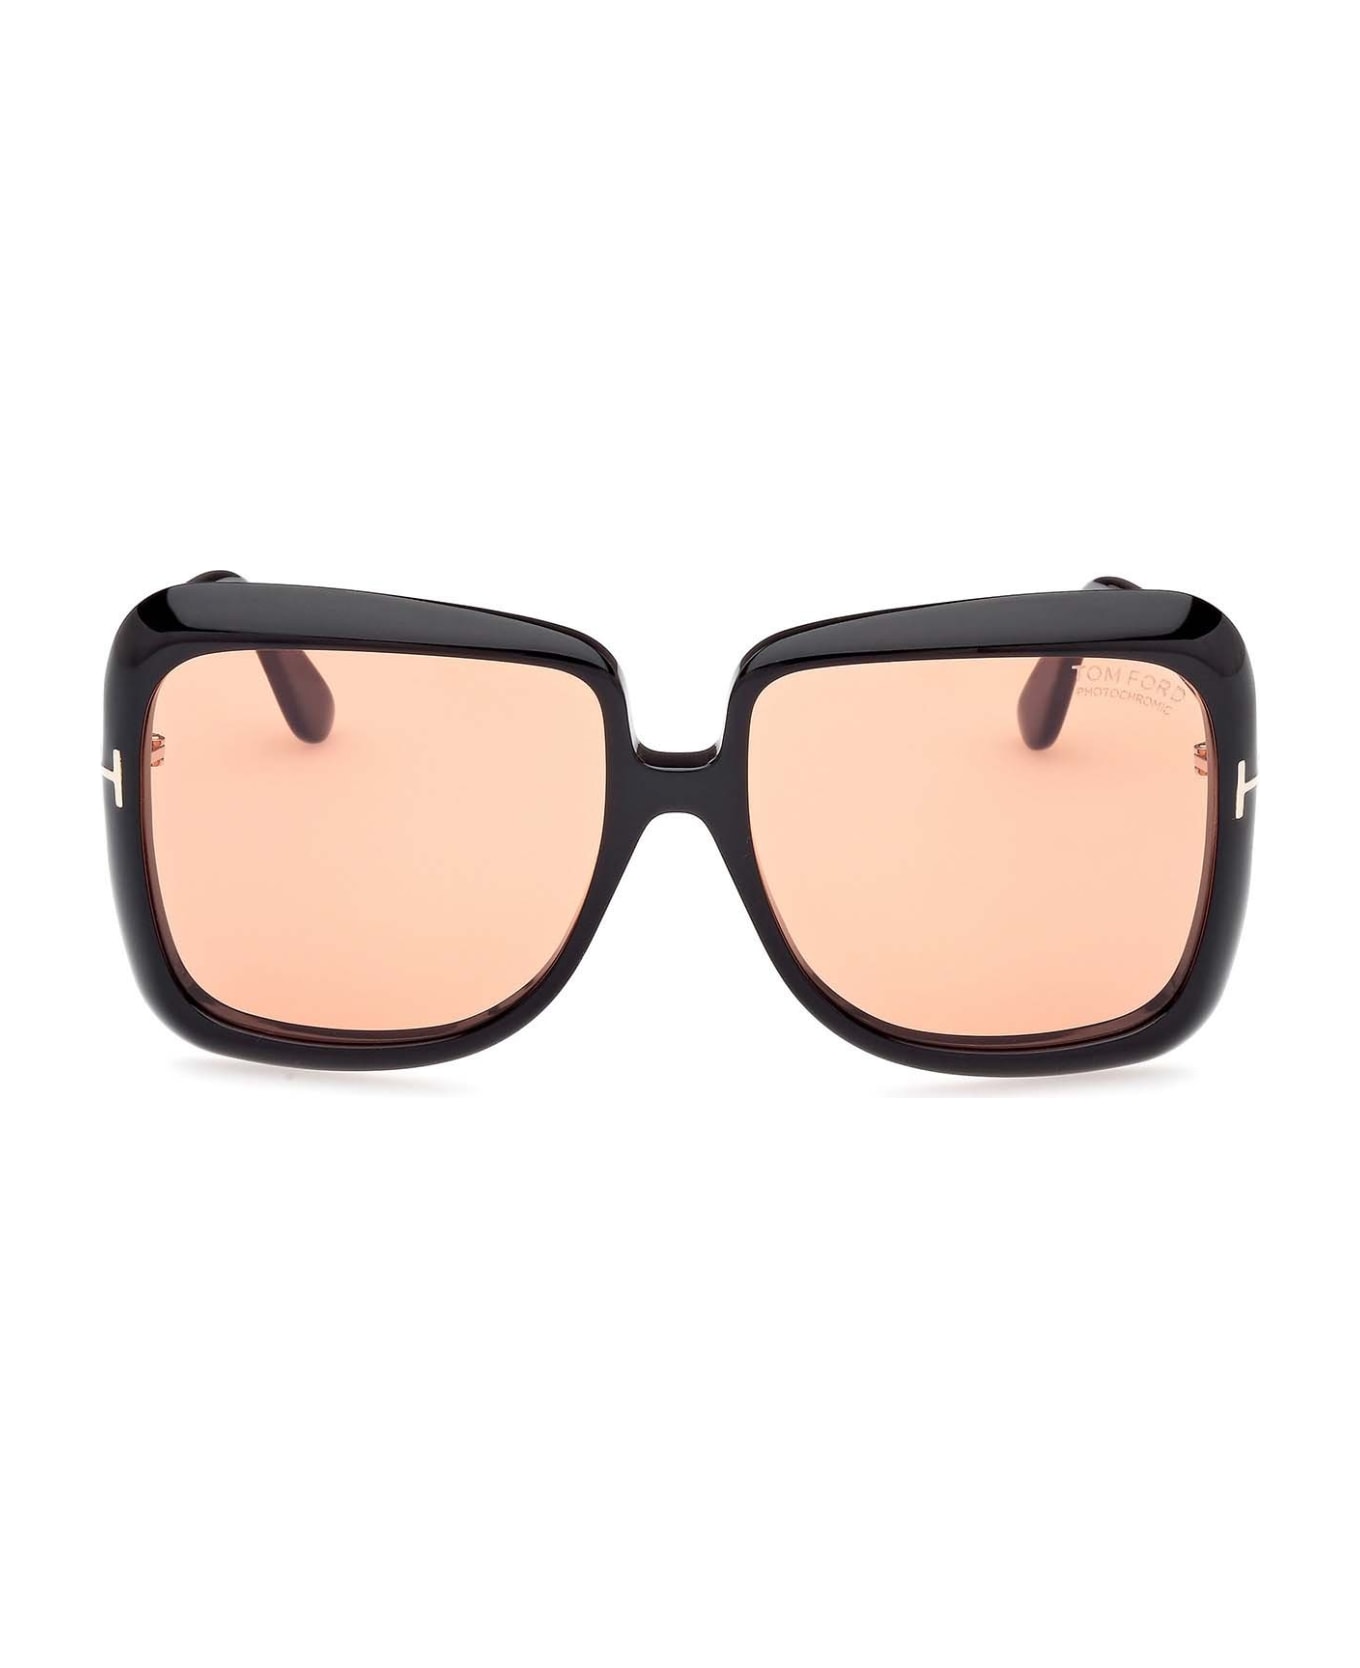 Tom Ford Eyewear Sunglasses - Nero/Arancione